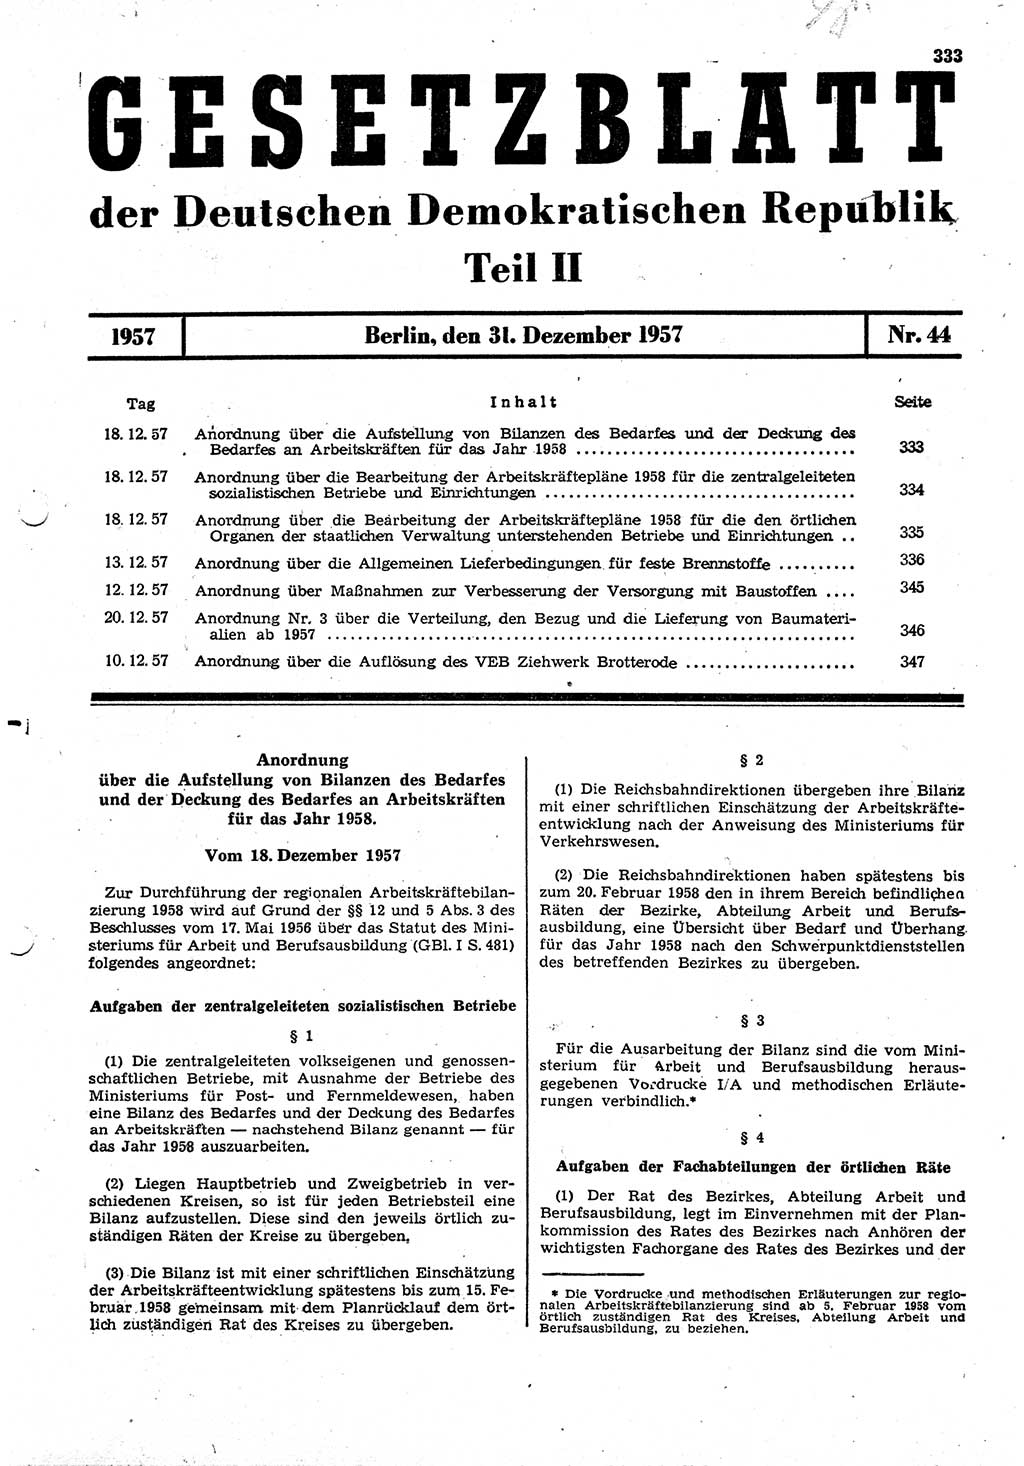 Gesetzblatt (GBl.) der Deutschen Demokratischen Republik (DDR) Teil ⅠⅠ 1957, Seite 333 (GBl. DDR ⅠⅠ 1957, S. 333)